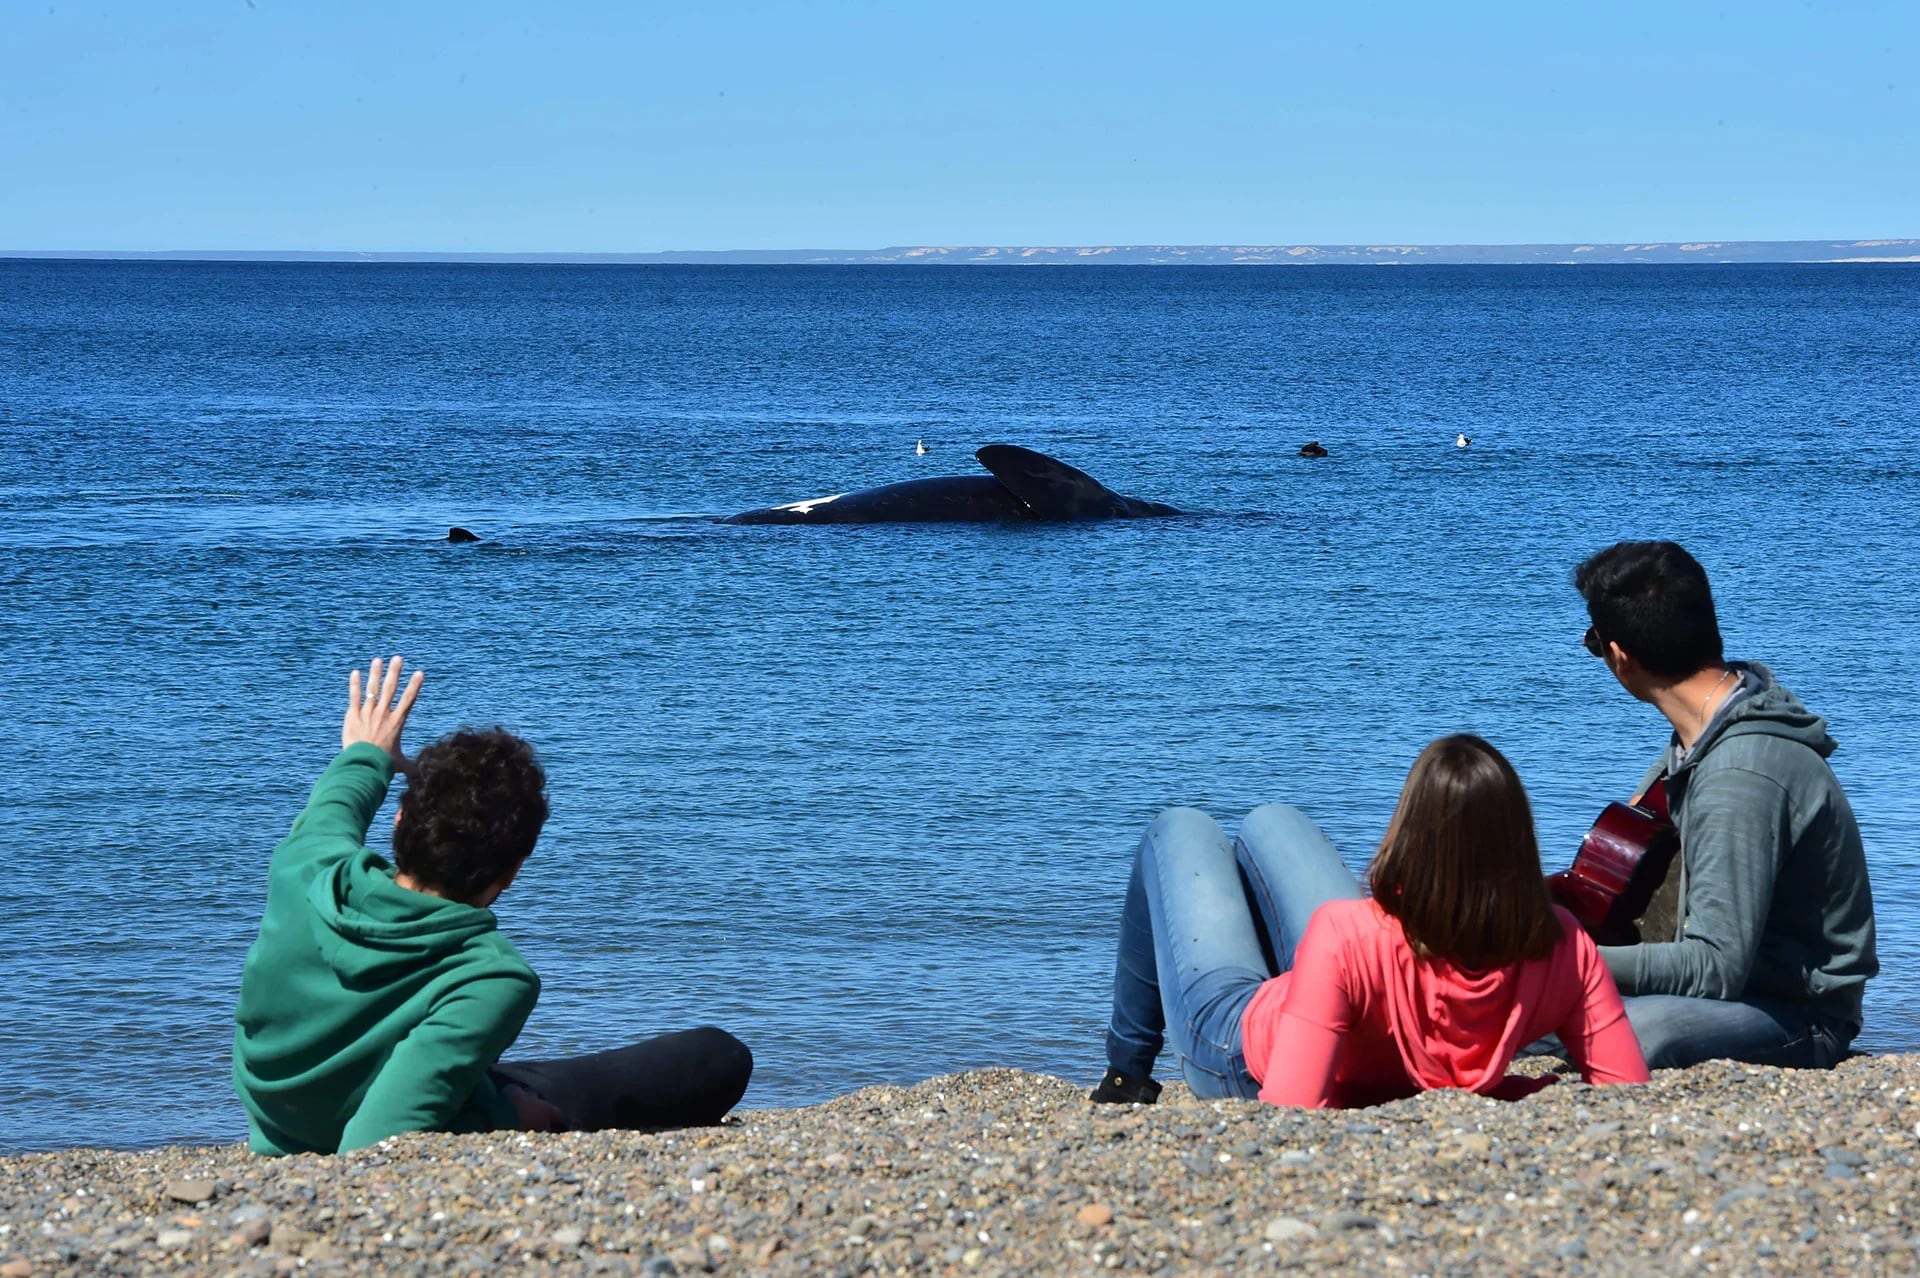 El avistaje de ballenas en Puerto Madryn tiene su punto más convocante durante el invierno (AW)